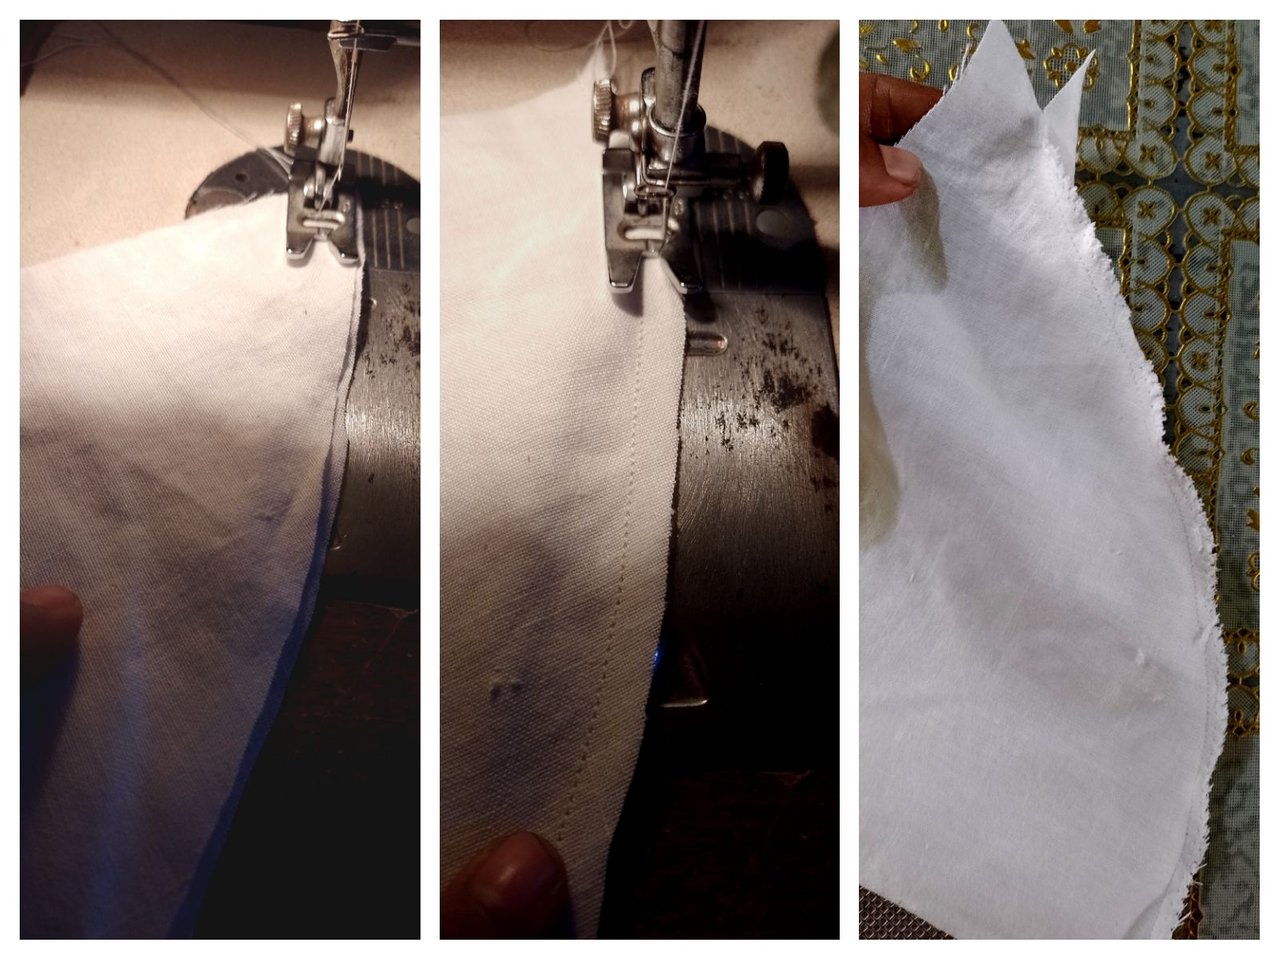 ES, EN - Cómo hacer un colador de tela, How to make a fabric strainer